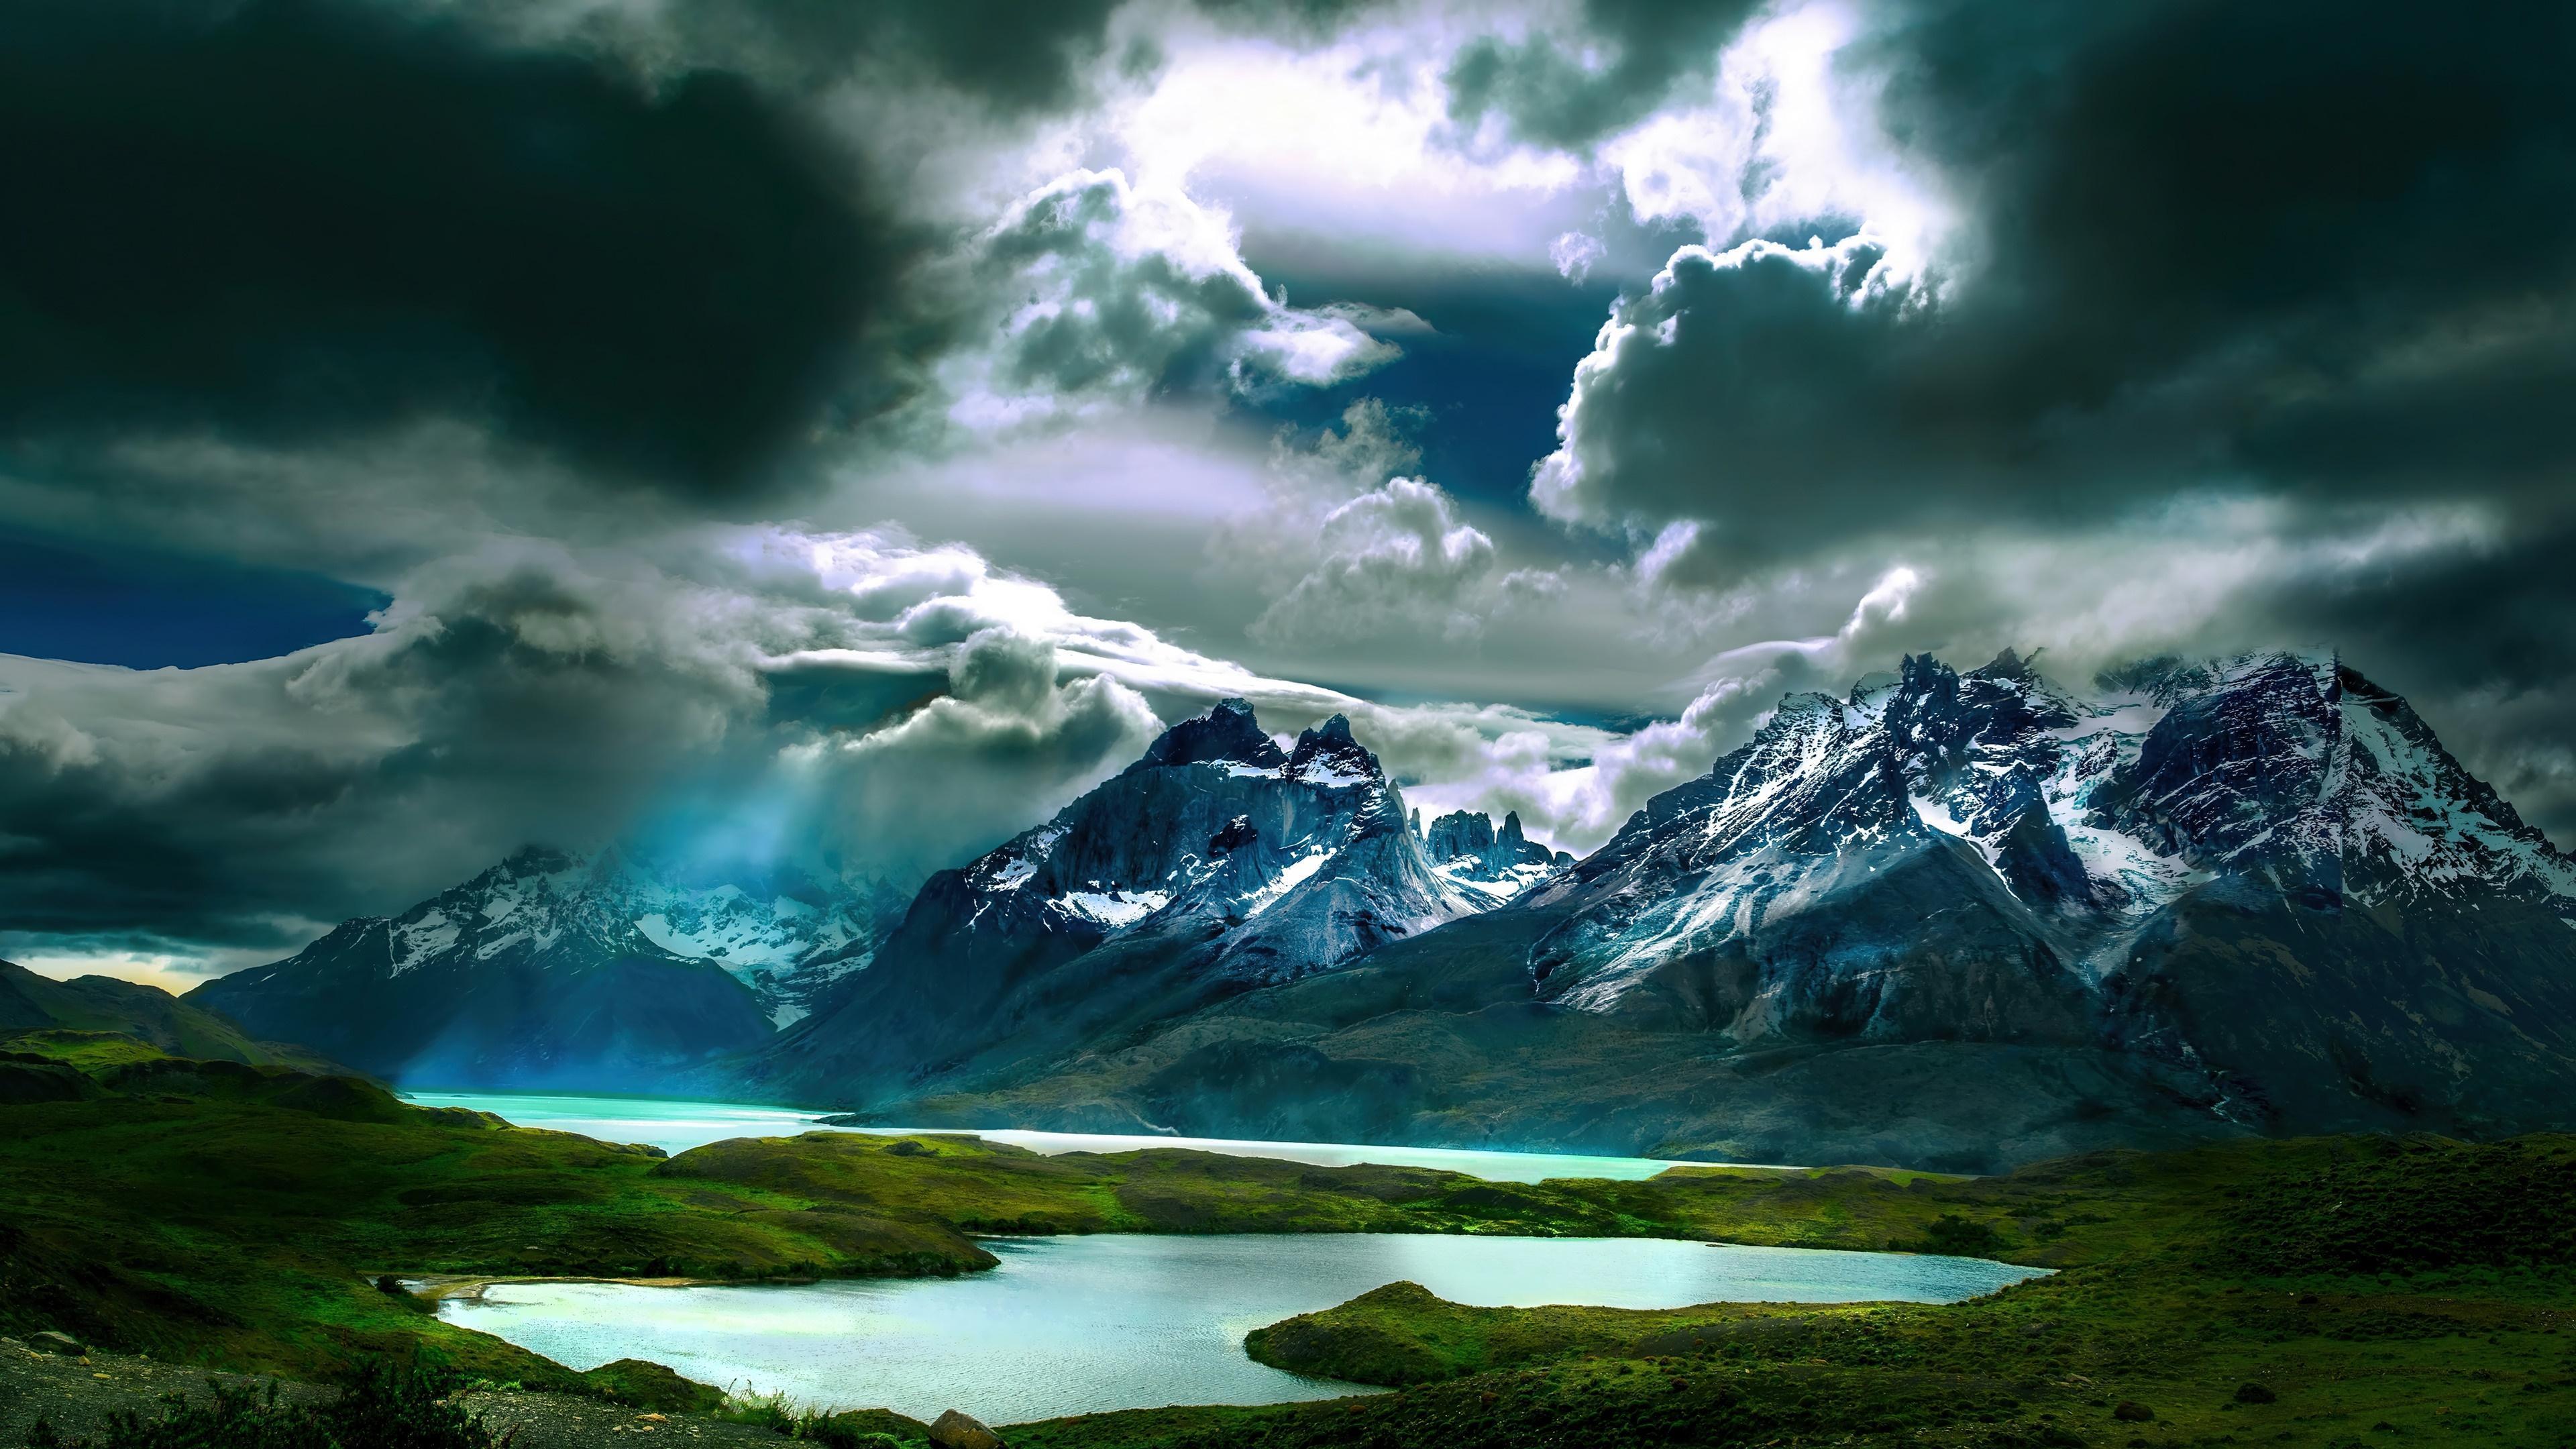 HD wallpaper, Mountain, Clouds, Scenery, 4K, Landscape